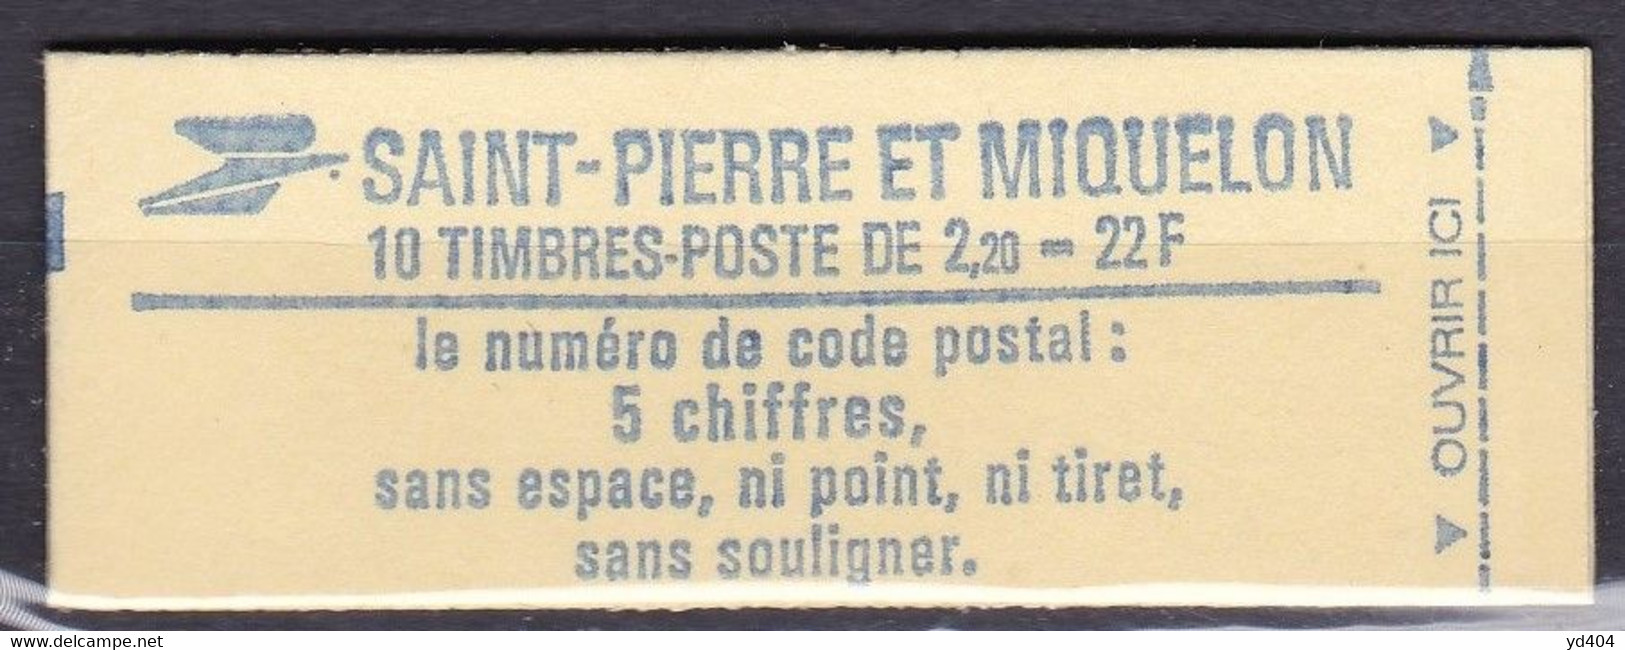 PM-710 – ST PIERRE & MIQUELON – BOOKLETS - 1986 – Liberté De Gandon – Y&T # C464a MNH 12,50 € - Booklets